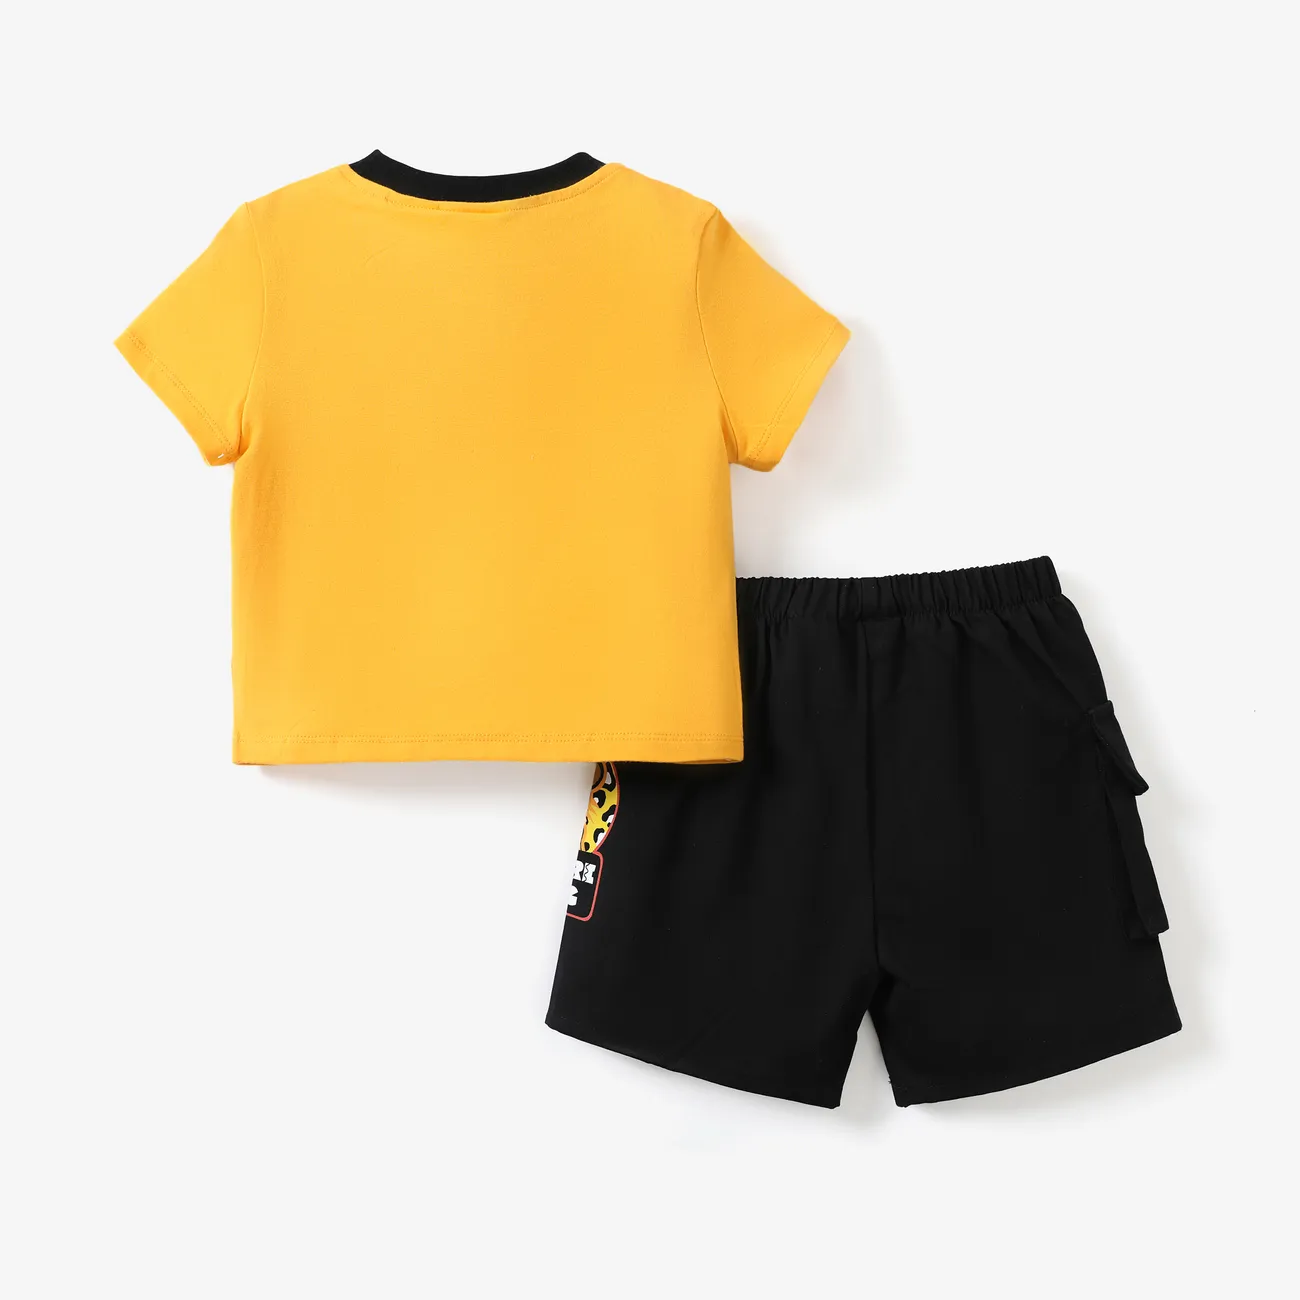 Disney Rei Leão Criança Menino Bolso cosido Infantil conjuntos de camisetas gengibre-2 big image 1